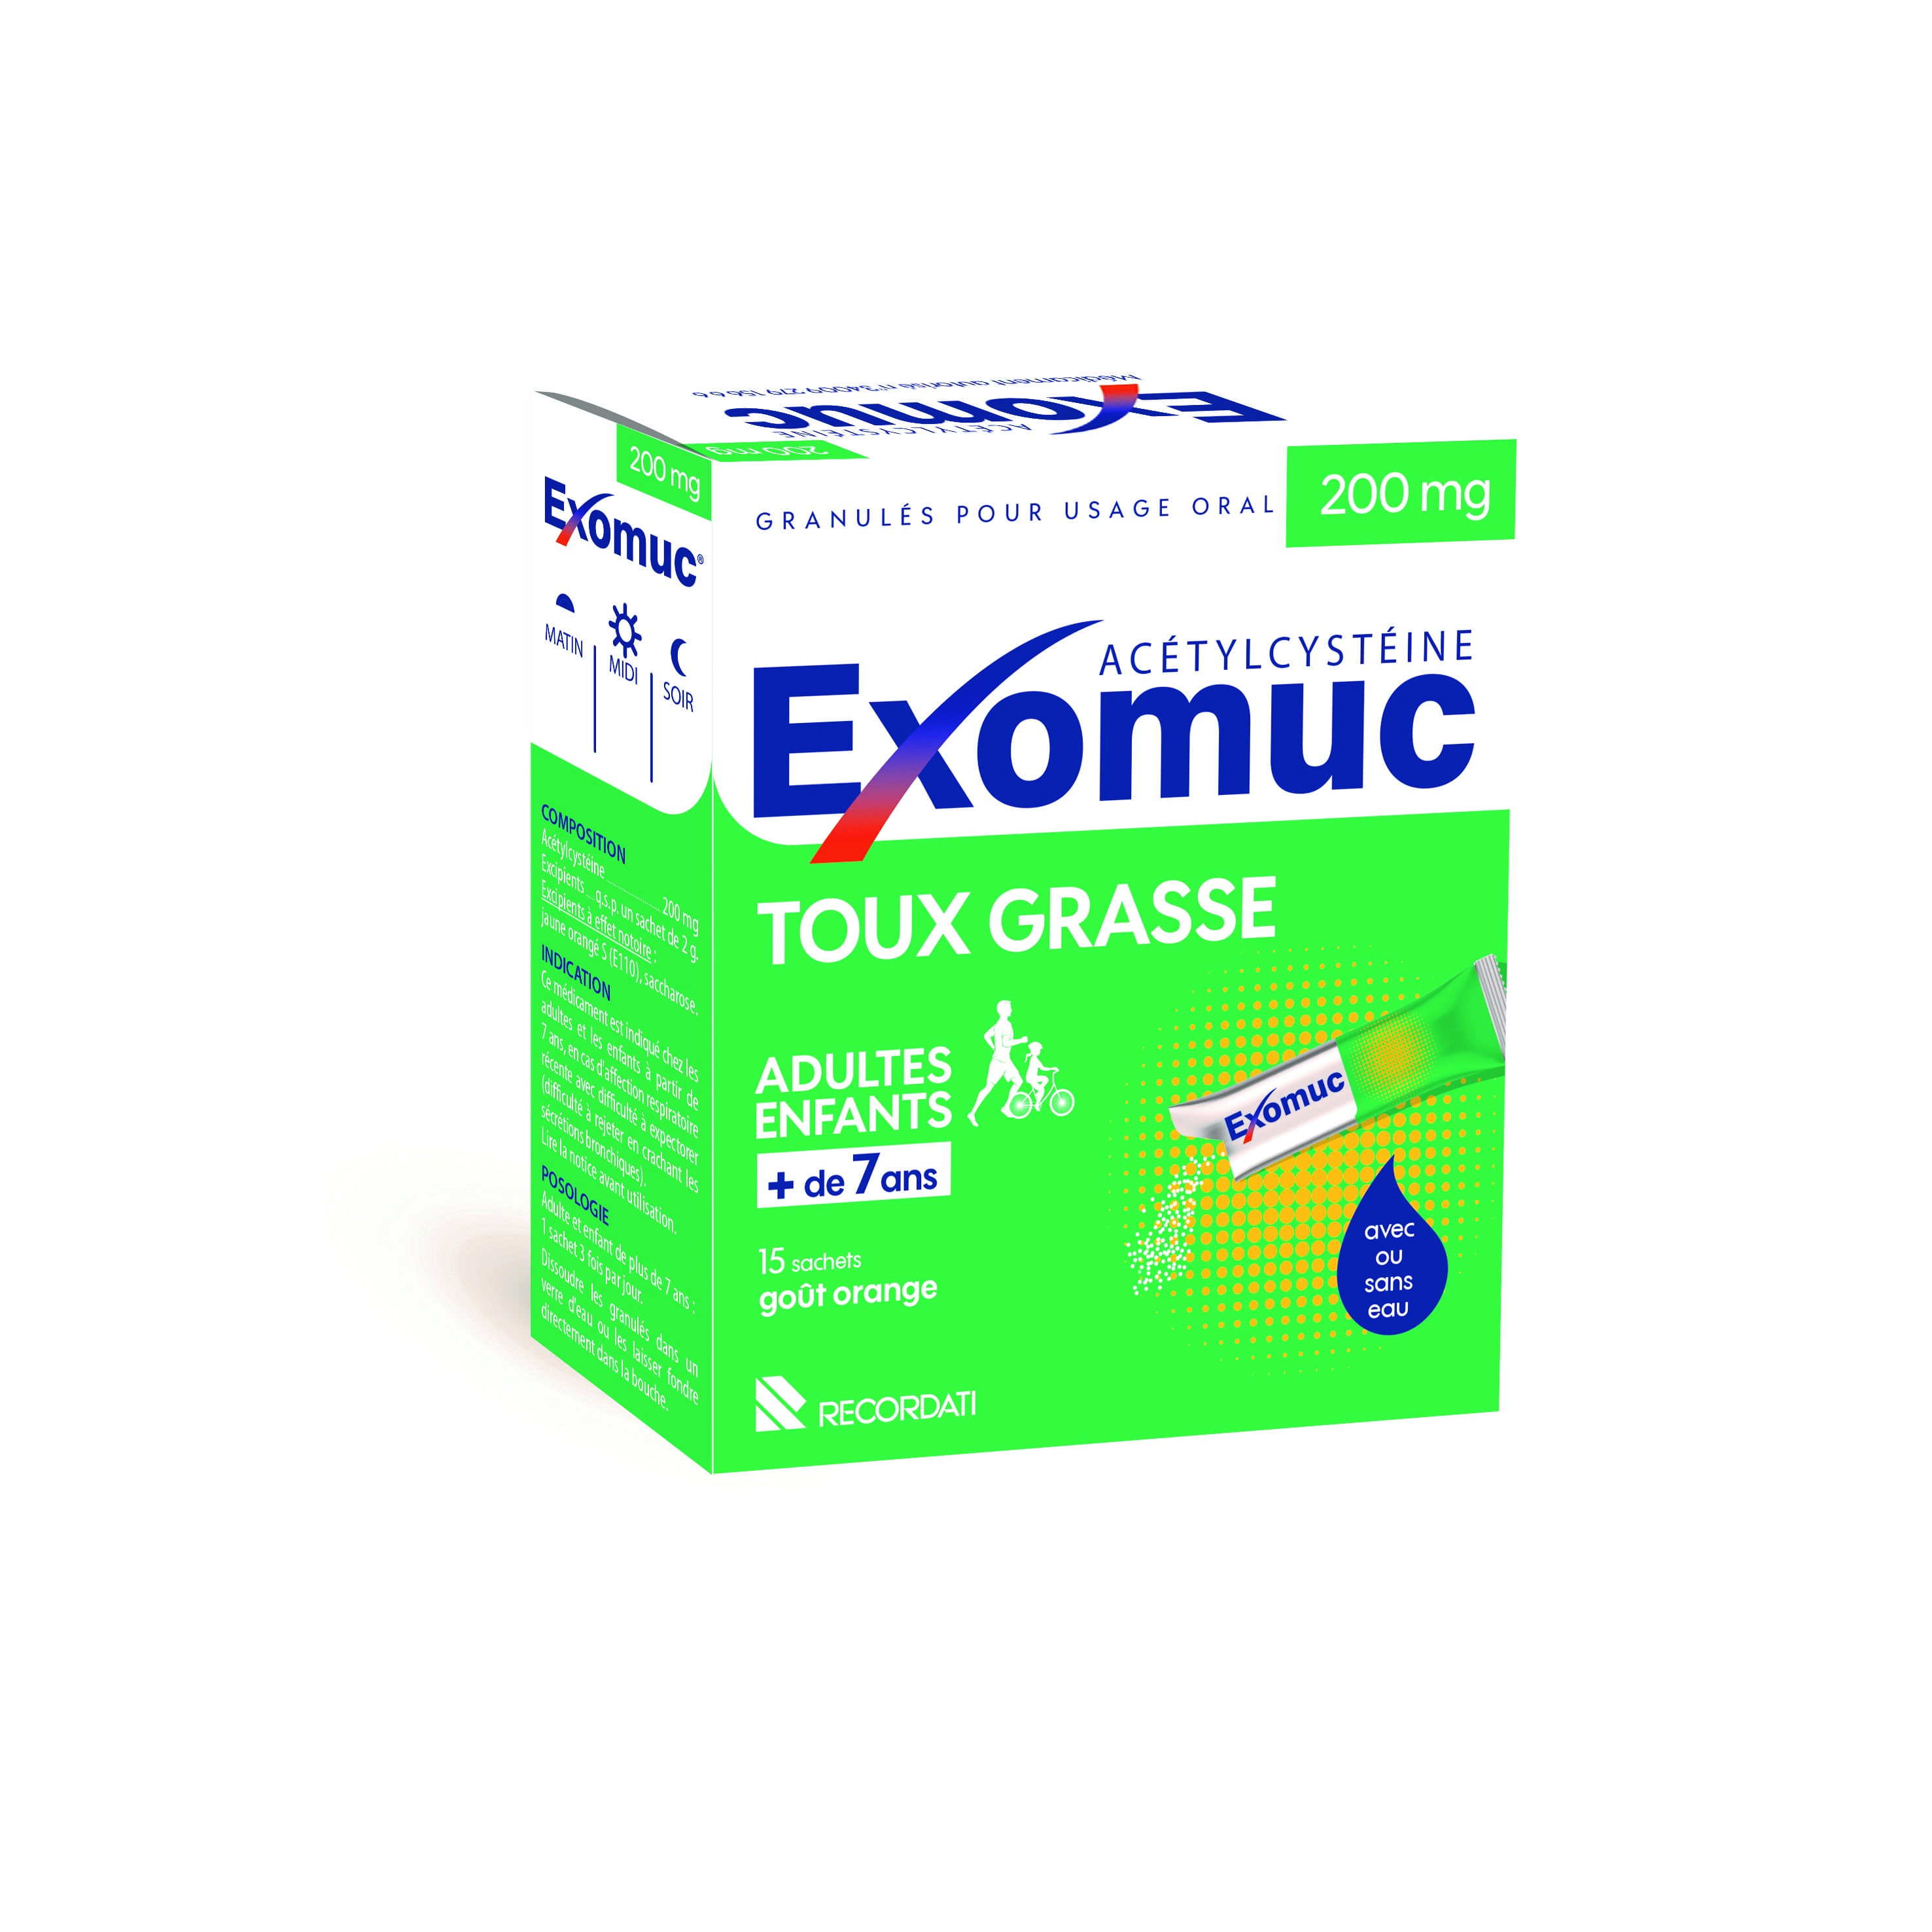 Exomuc 200 mg toux grasse goût orange - 15 sachets sans eau